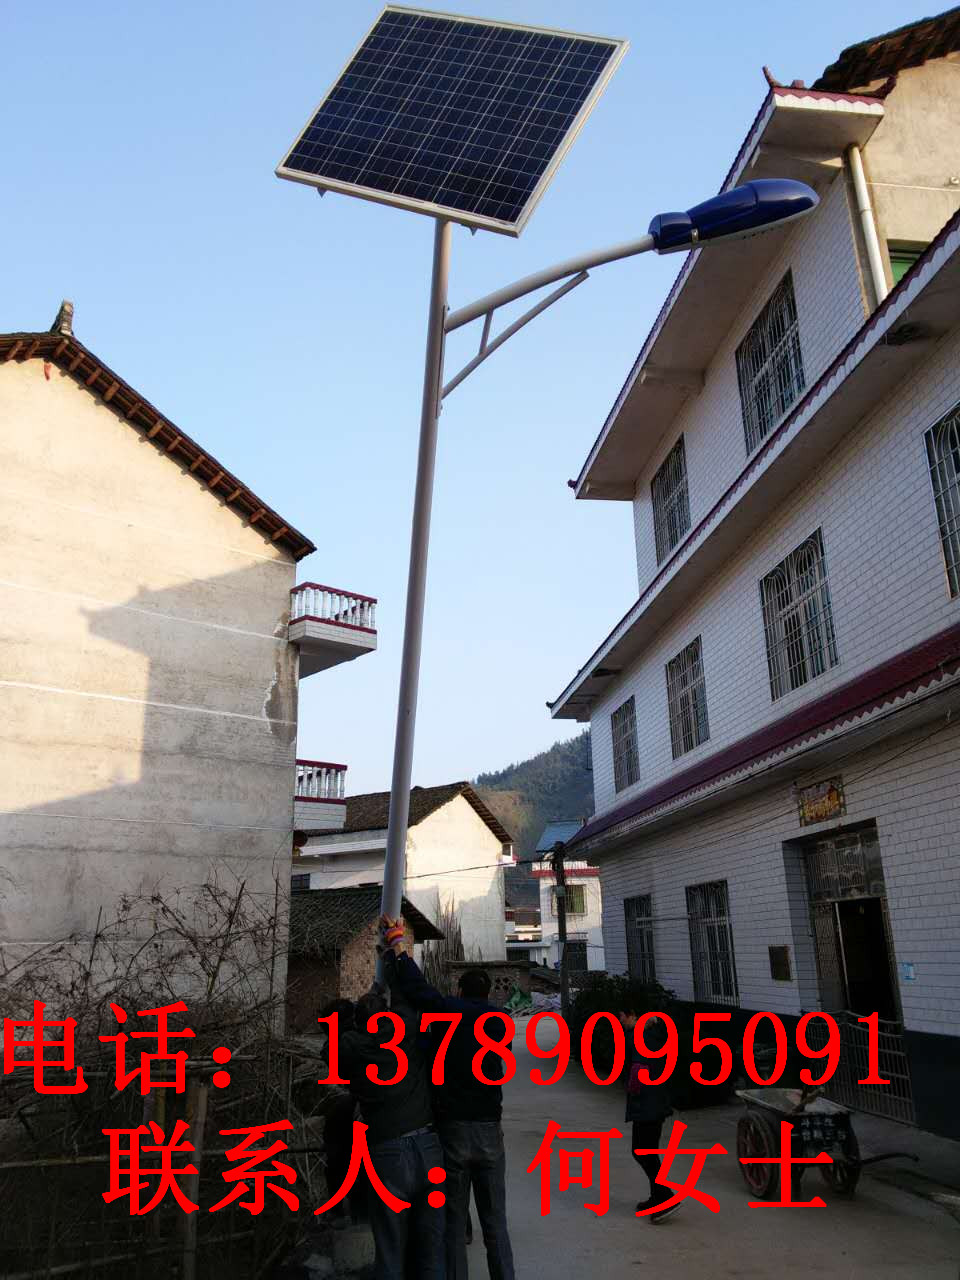 湖南株洲太阳能路灯厂家直销 太阳能路灯的安装说明图片